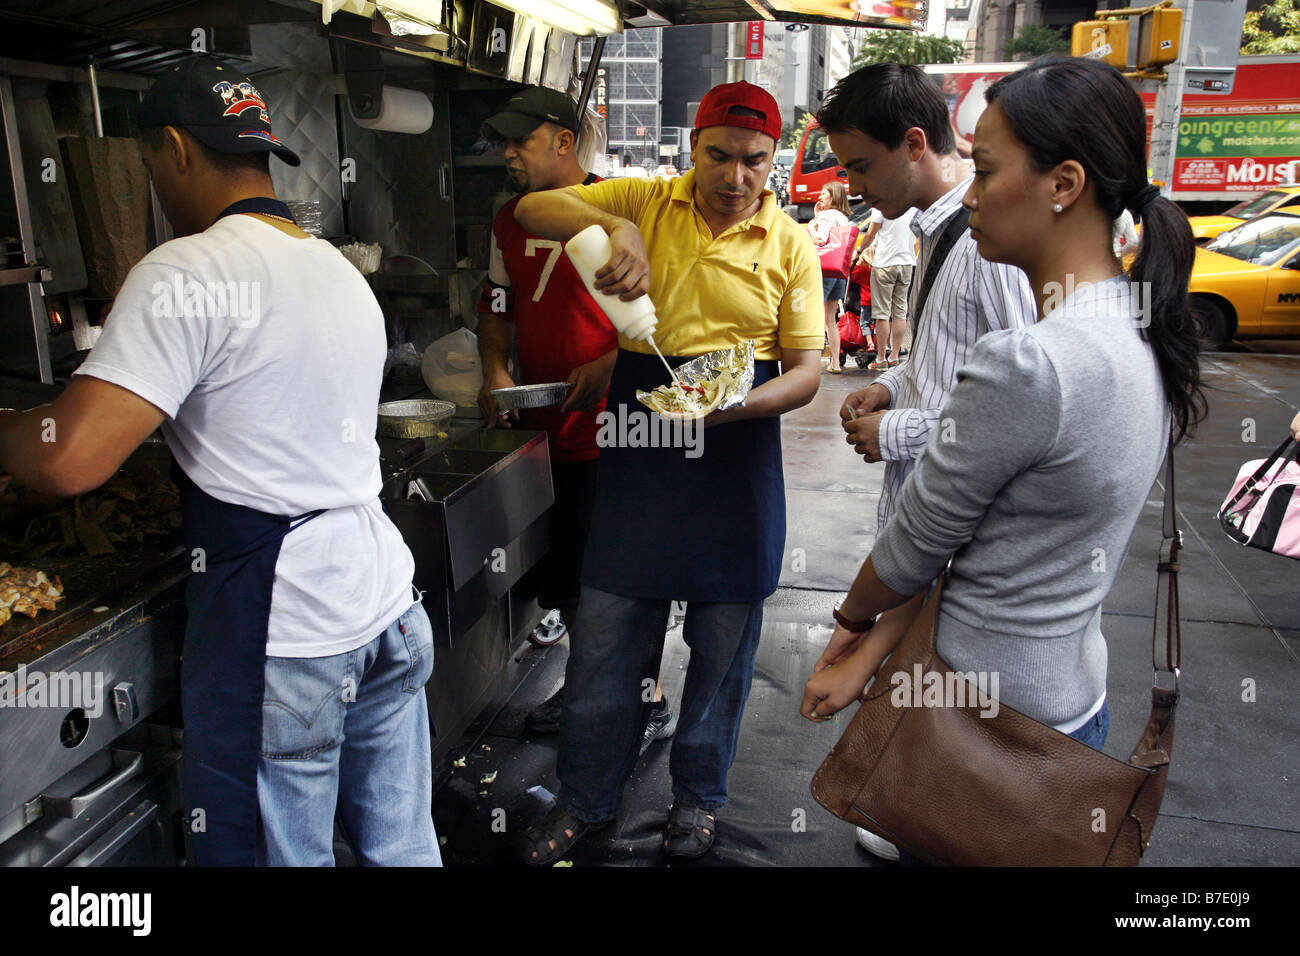 Cavalletto di Kebab & venditore ambulante, New York City, Stati Uniti d'America Foto Stock